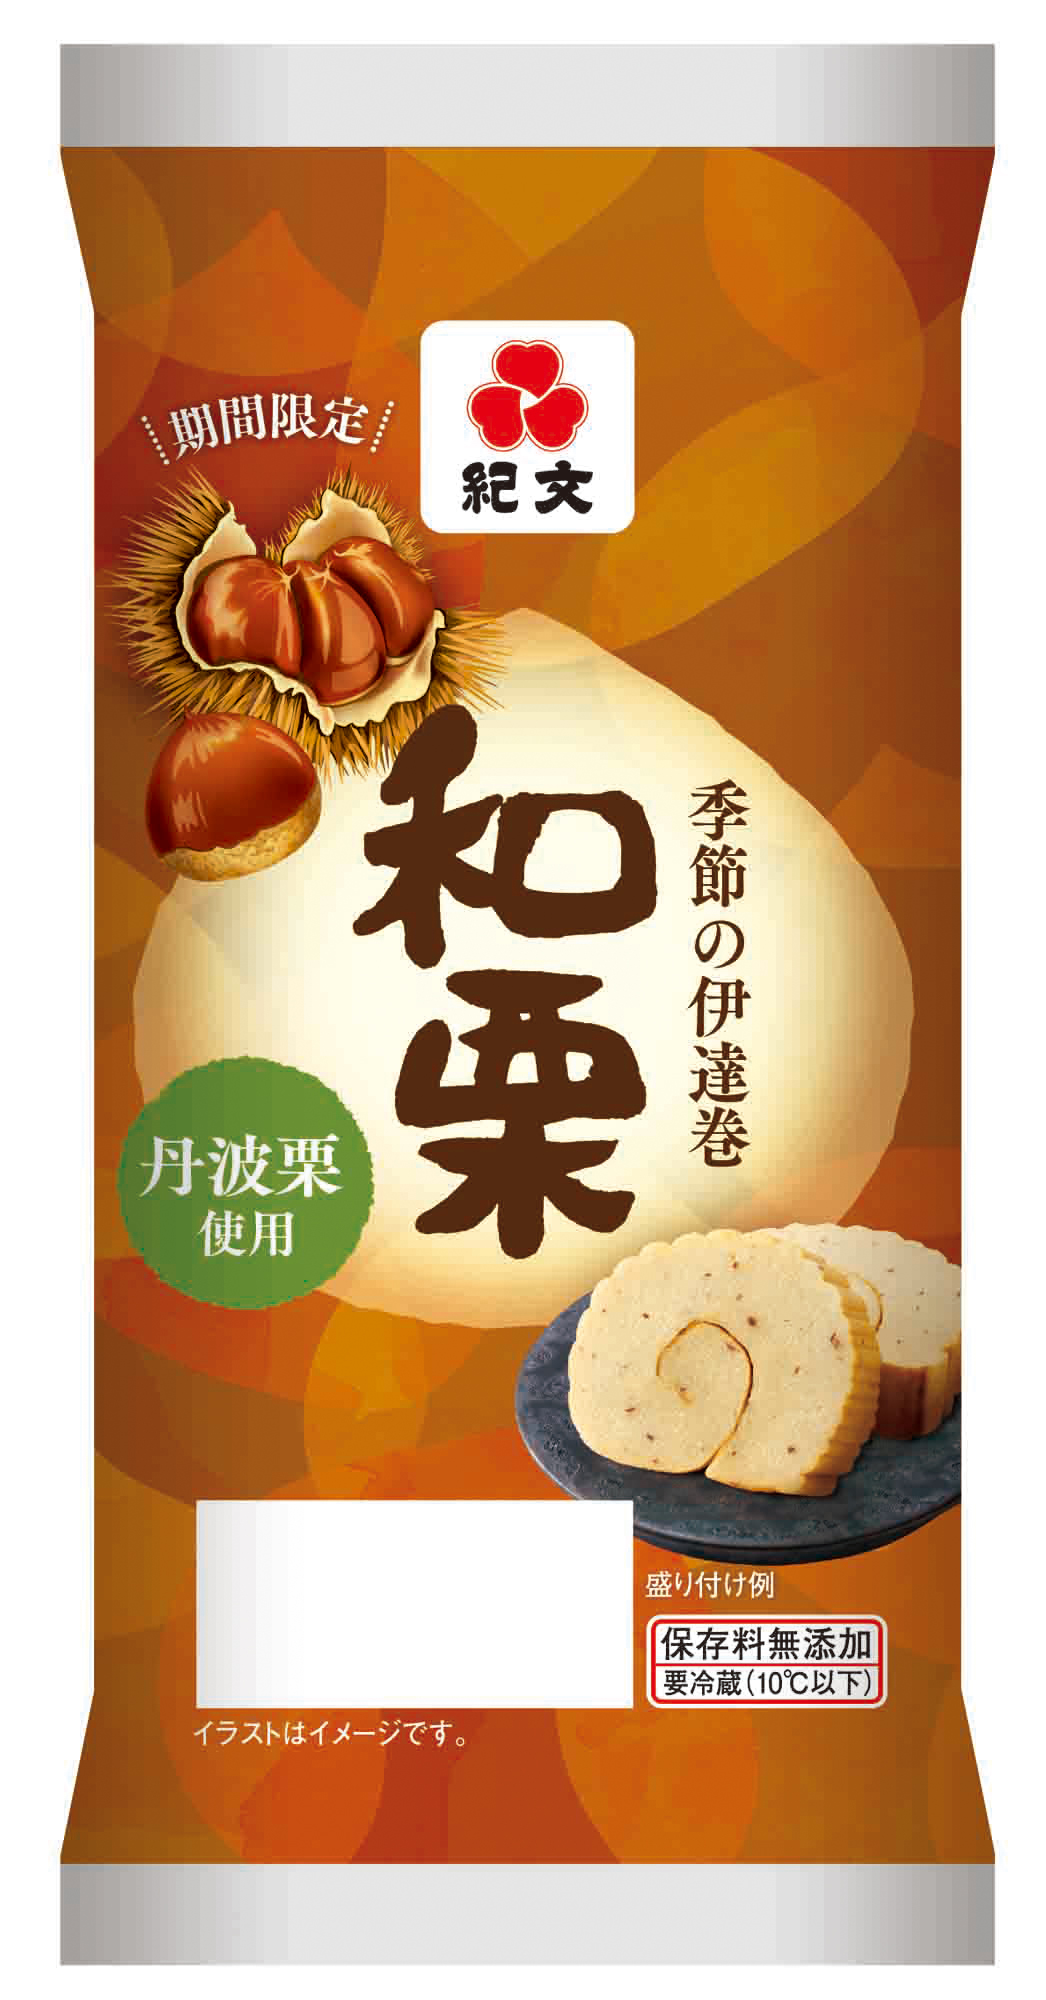 9月9日は 重陽の節供 季節の伊達巻 和栗 発売 株式会社紀文食品のプレスリリース